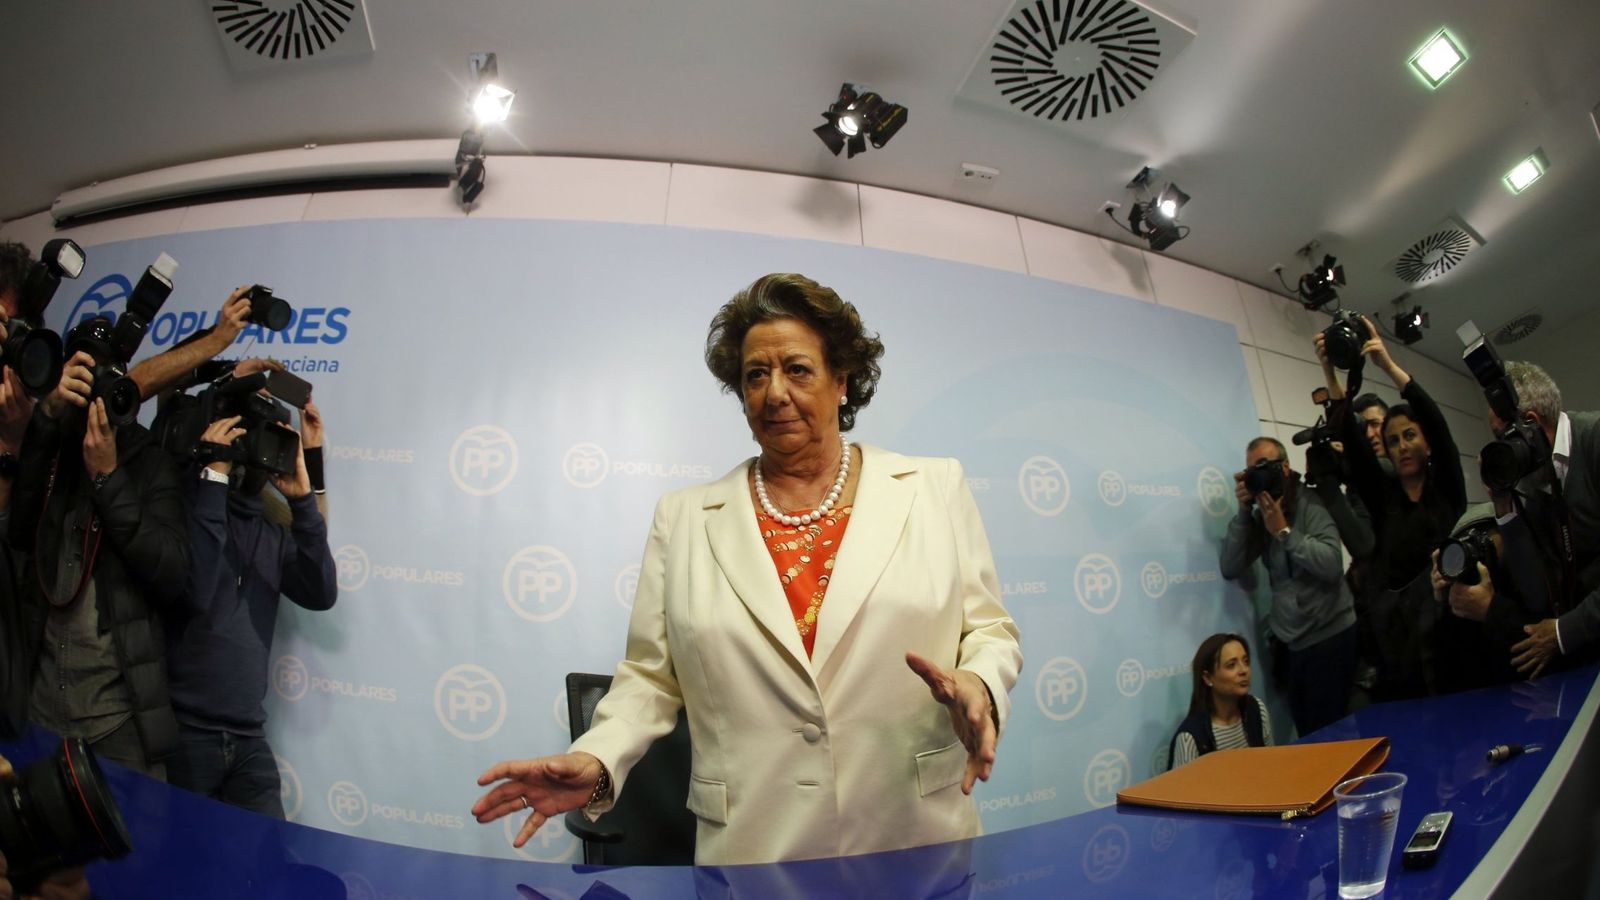 Foto: La exalcaldesa de Valencia y senadora del Partido Popular, Rita Barberá, segundos antes de la comparecencia. (Efe) 